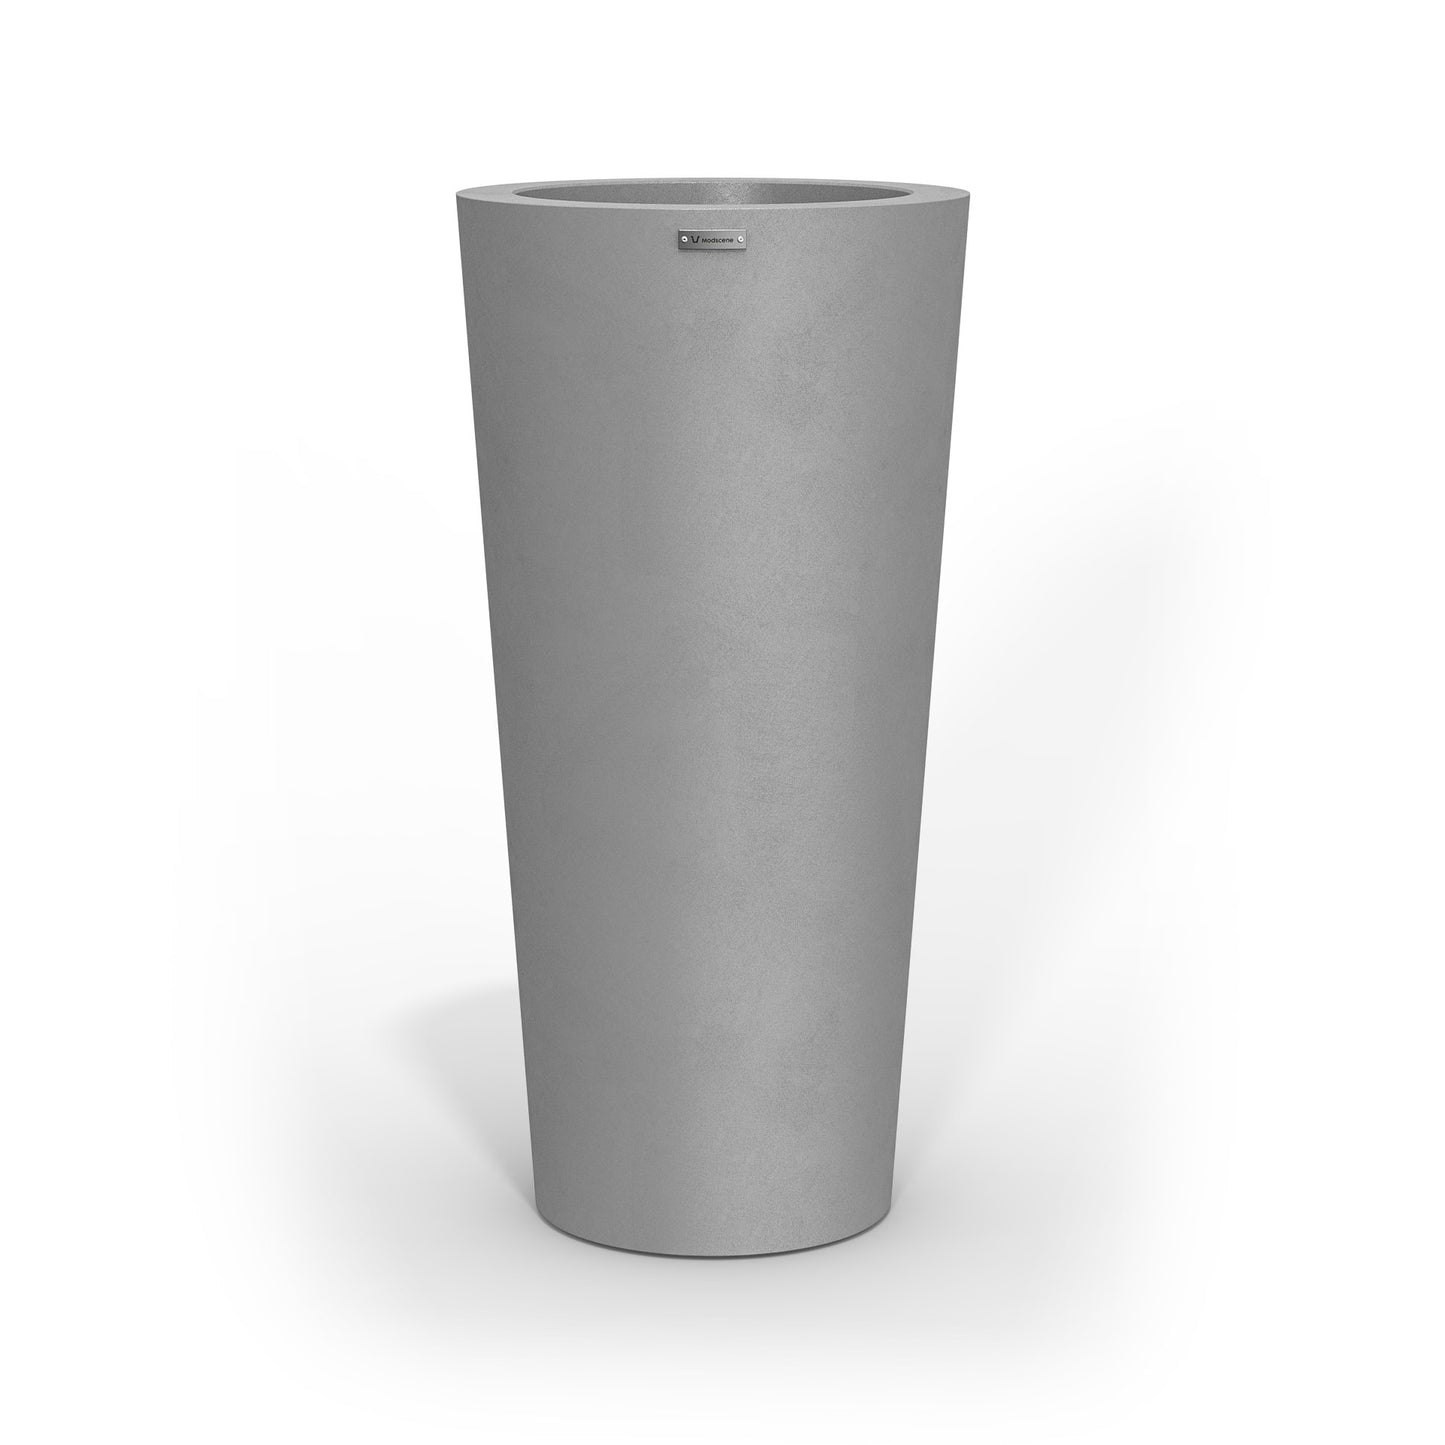 A tall Modscene planter pot in a concrete grey colour.